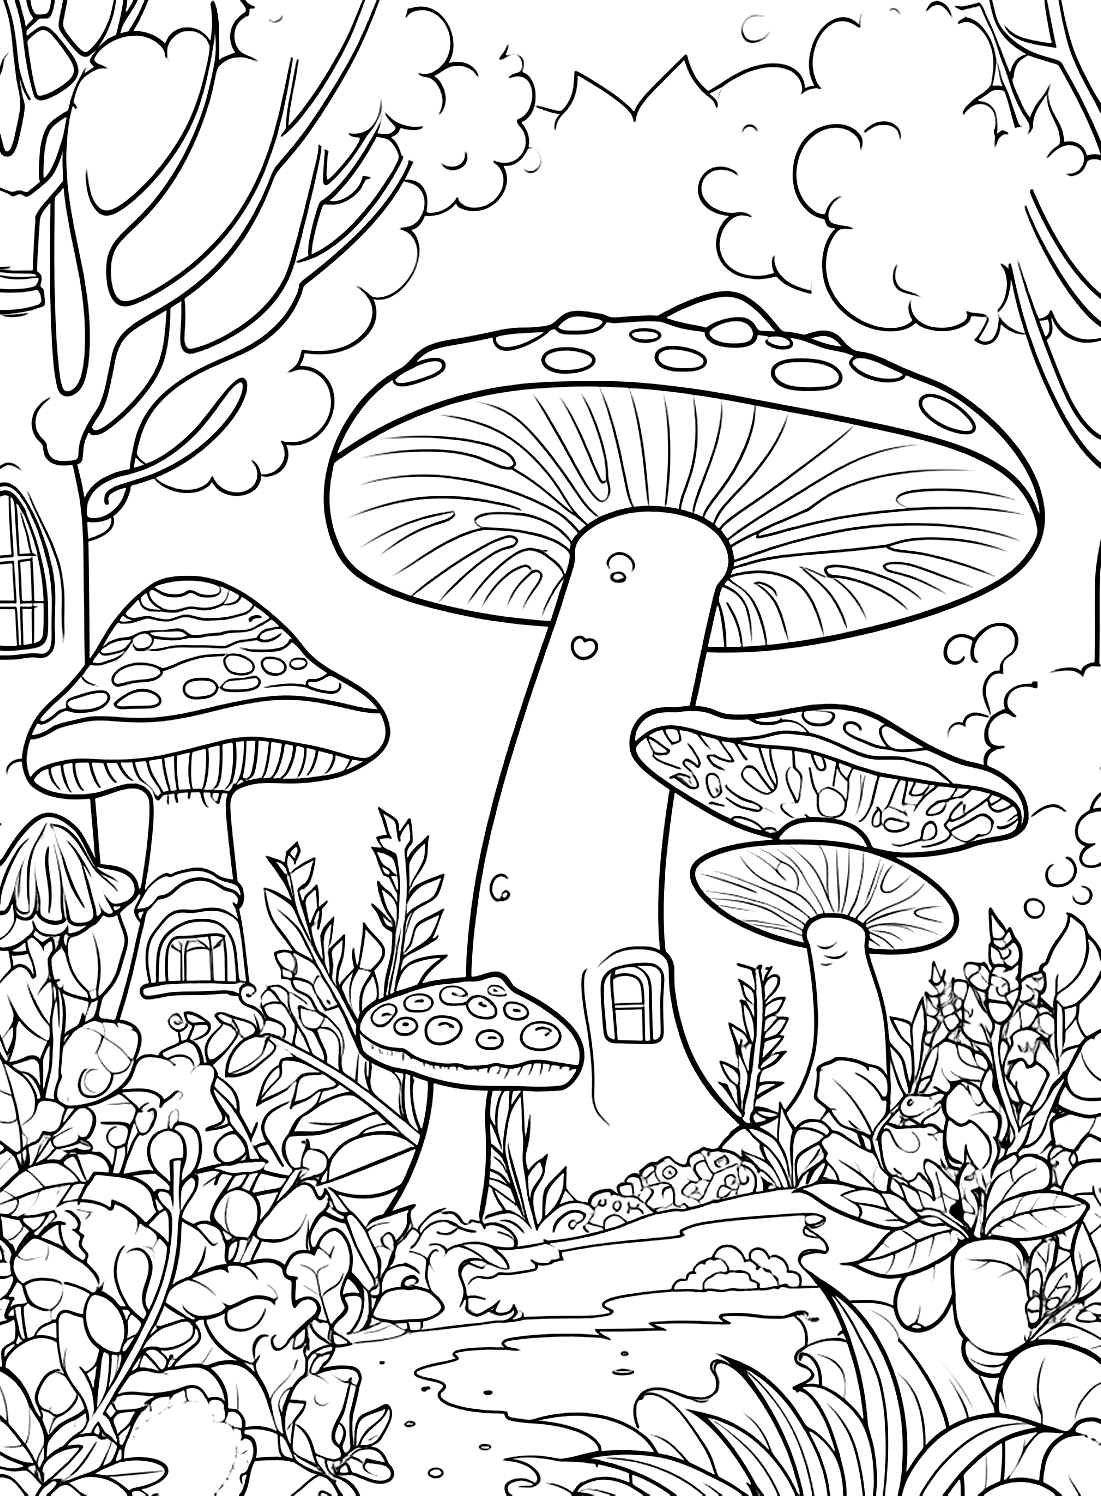 Página da floresta do cogumelo from Mushroom